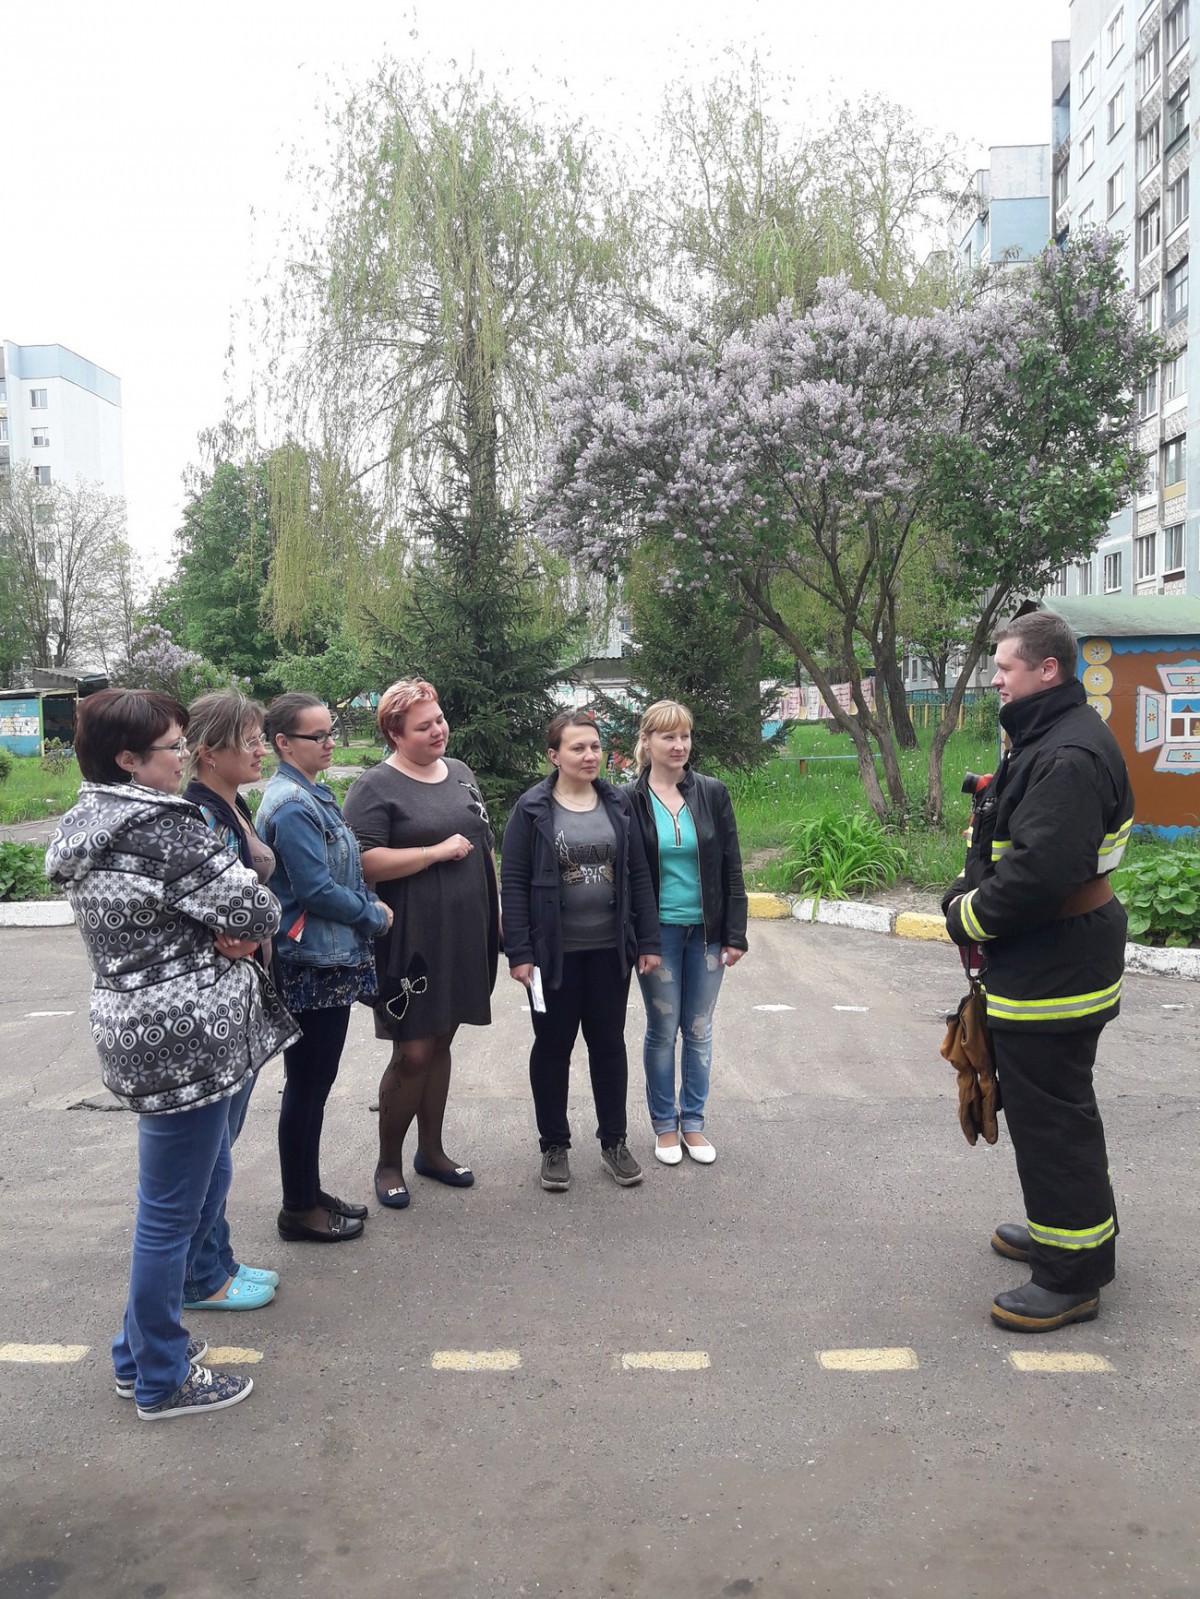 30 мая 2017 года бобруйские спасатели посетили ГУО «Ясли-сад № 75 г. Бобруйска». Целью данного визита было проведение тактико-специальных занятий в дошкольном учреждении.